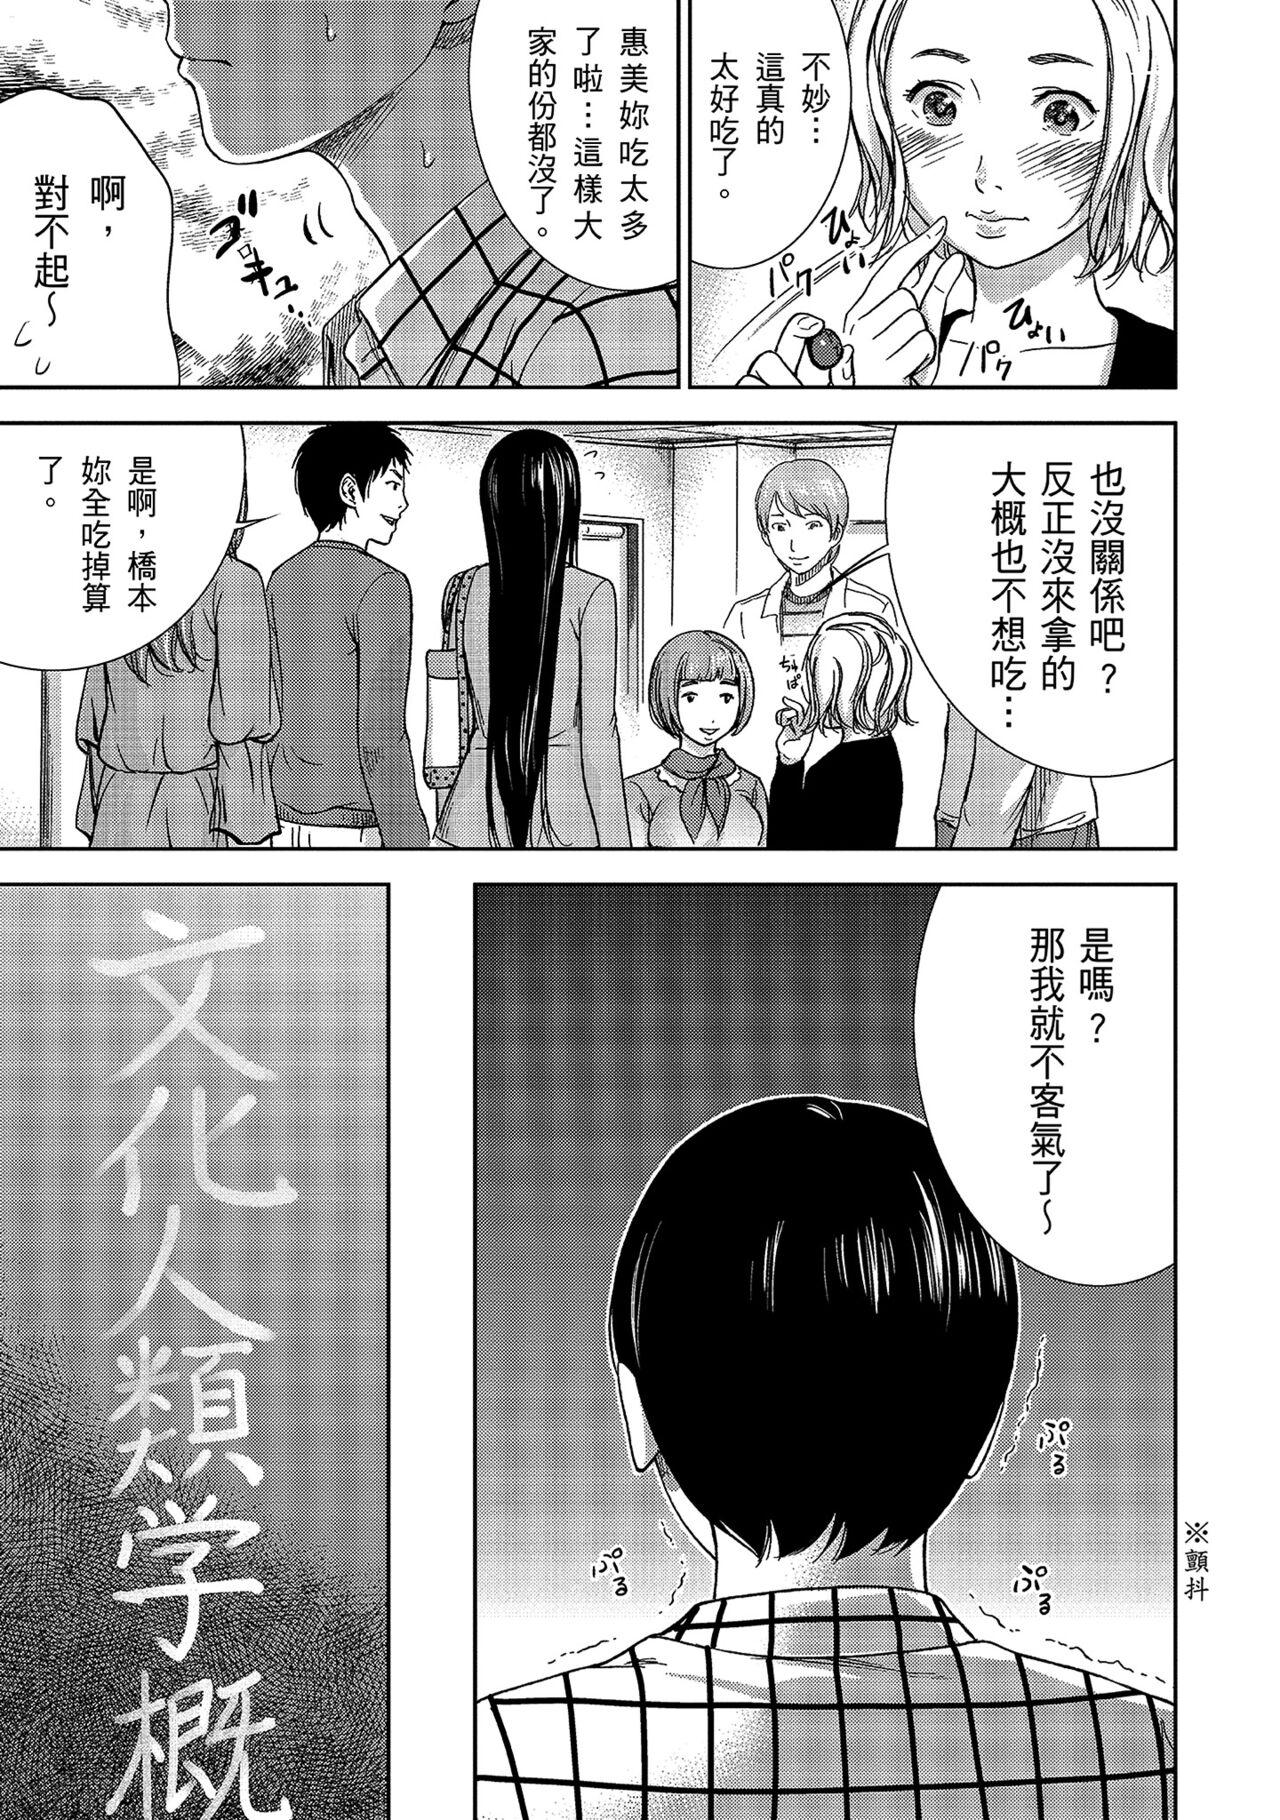 Gay Ass Fucking Ayamachi, Hajimemashite. 1 | 無法抗拒的誘惑 1 Girls - Page 9